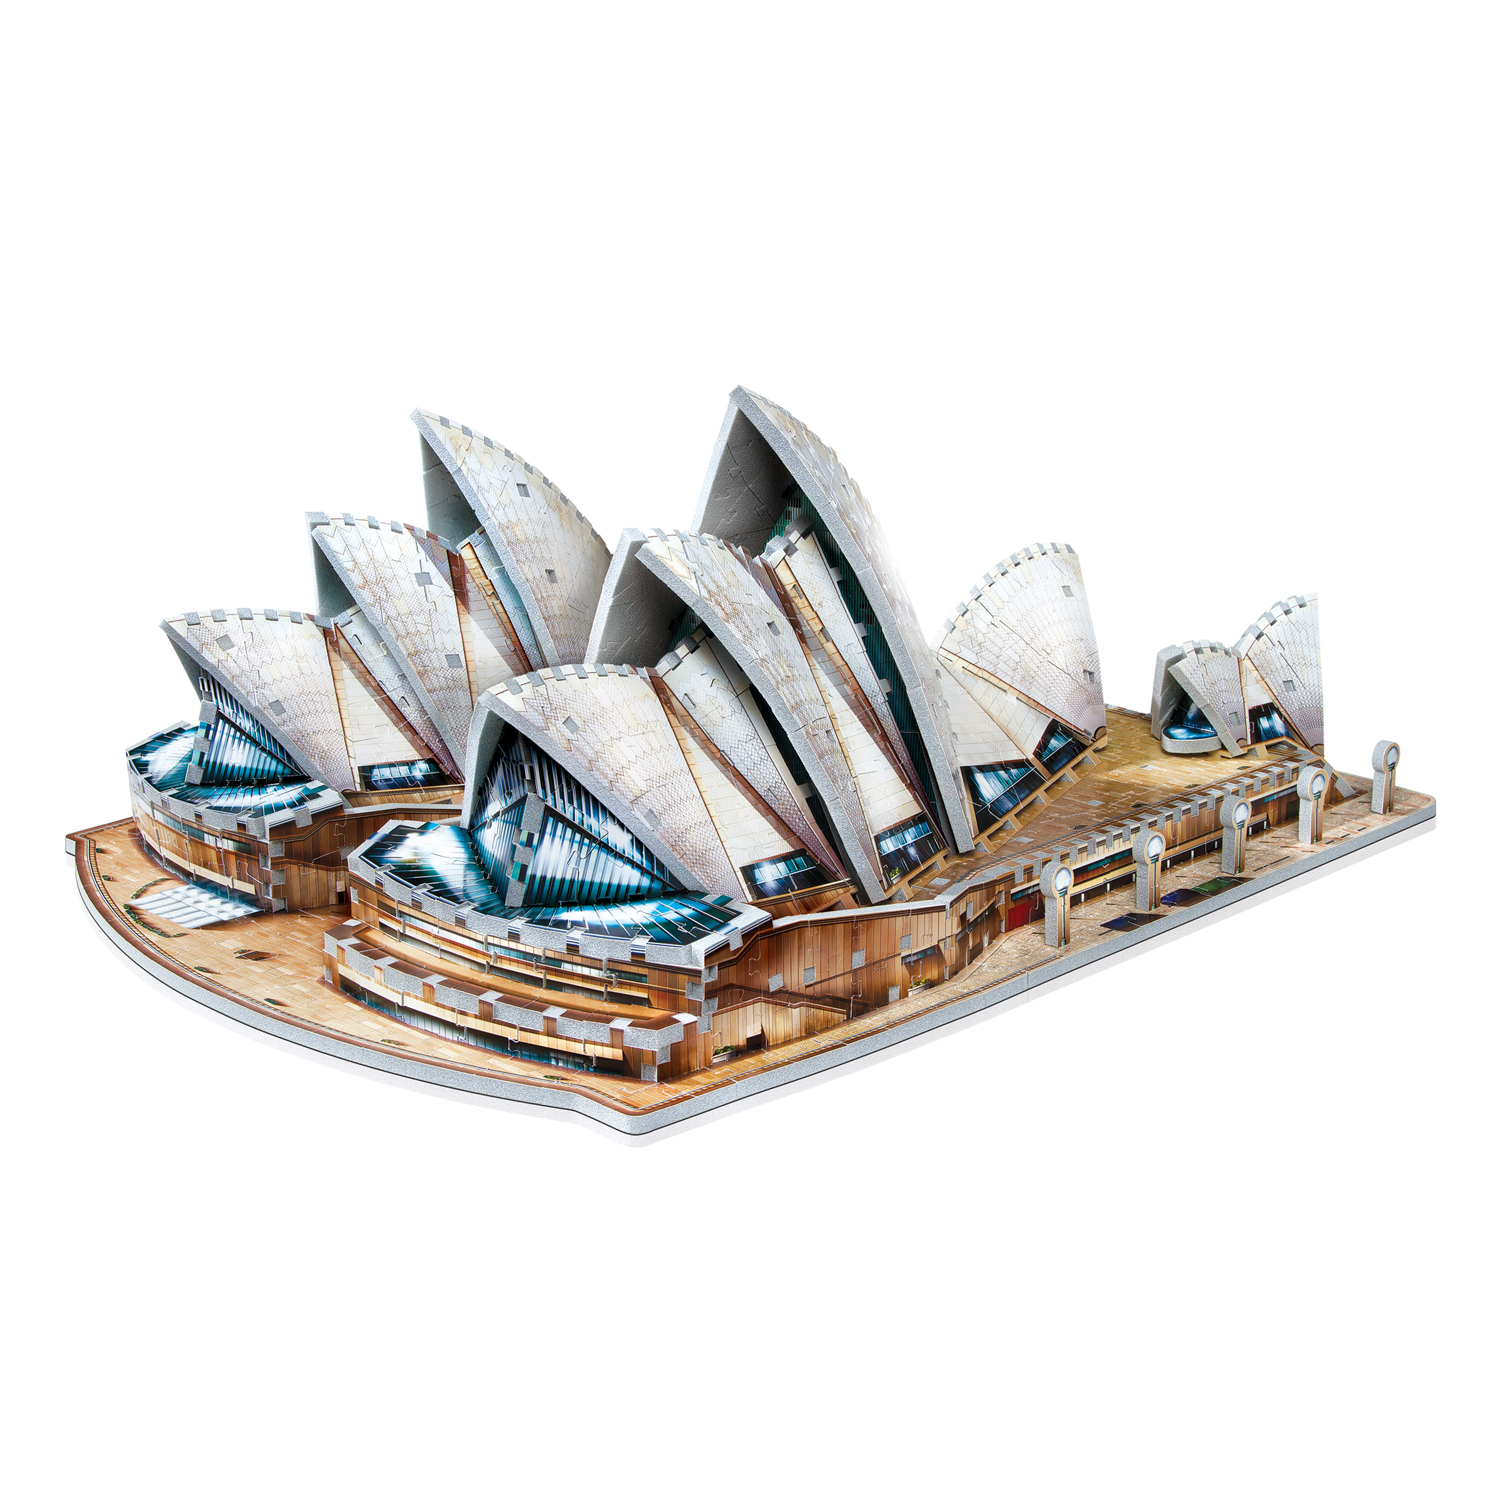 Sydney Oper Sidney Australien Weltall 3D Puzzle Metall Modell Laser Cut Bausatz 